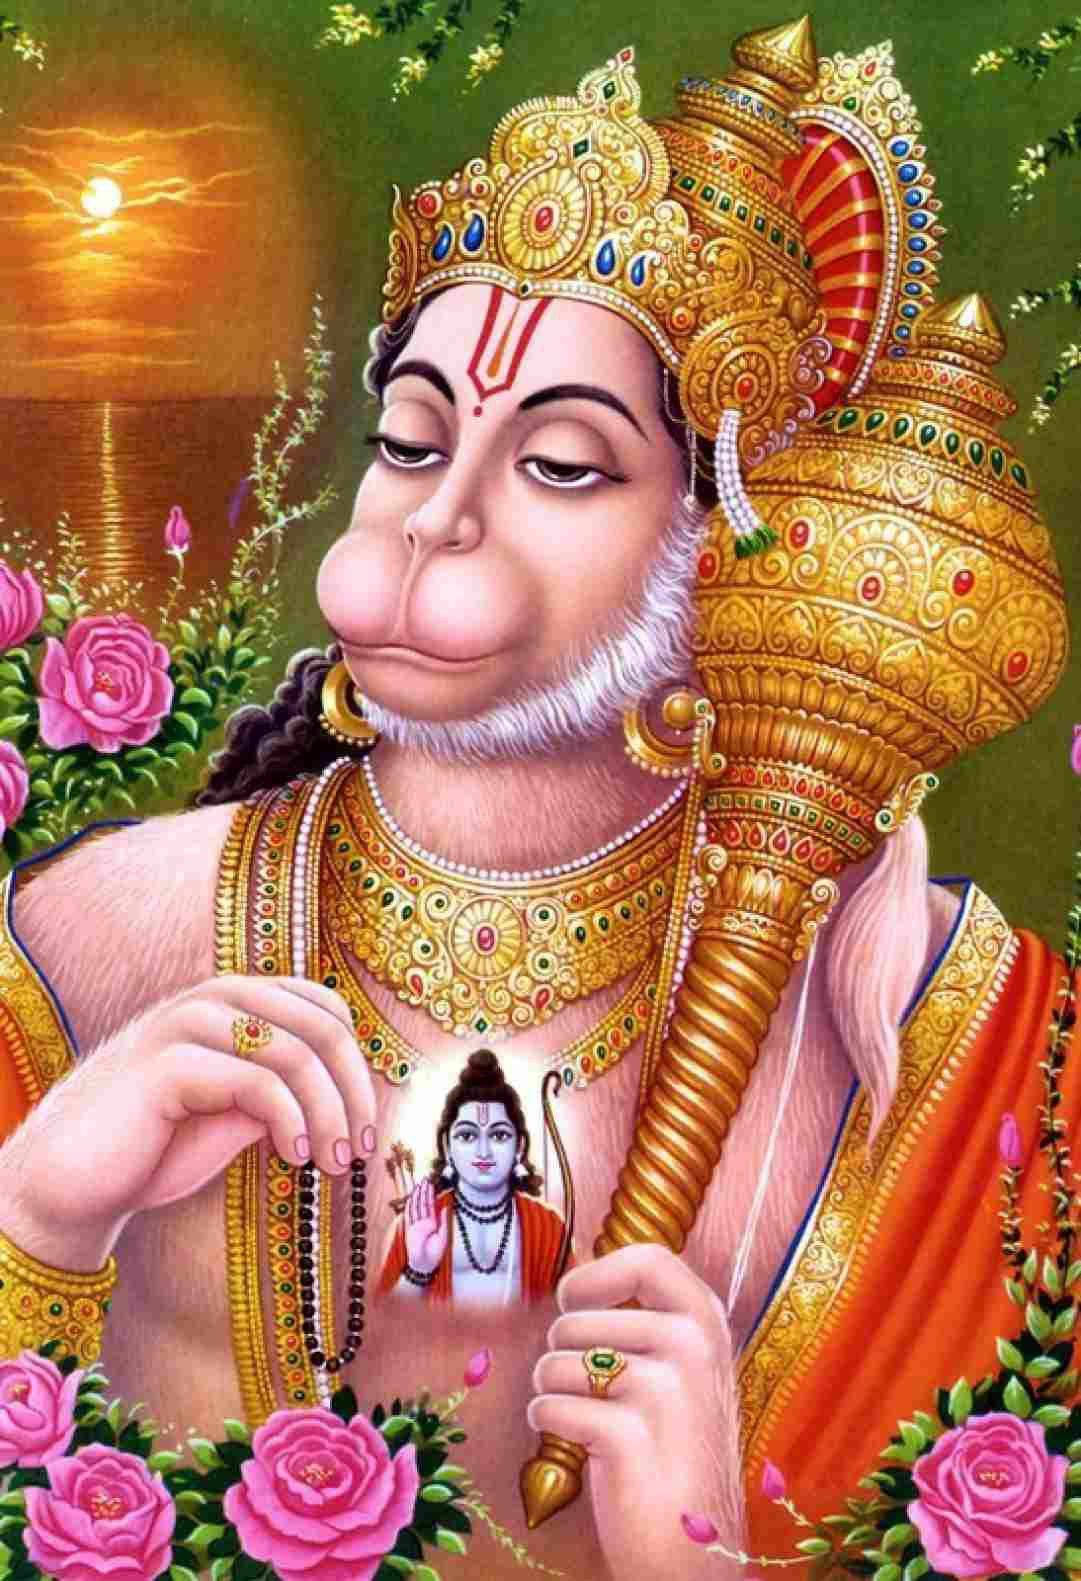 Tapetenpå Din Dator Eller Mobilenhet Kan Vara Av Lord Hanuman I 3d Med En Gyllene Gada. Wallpaper